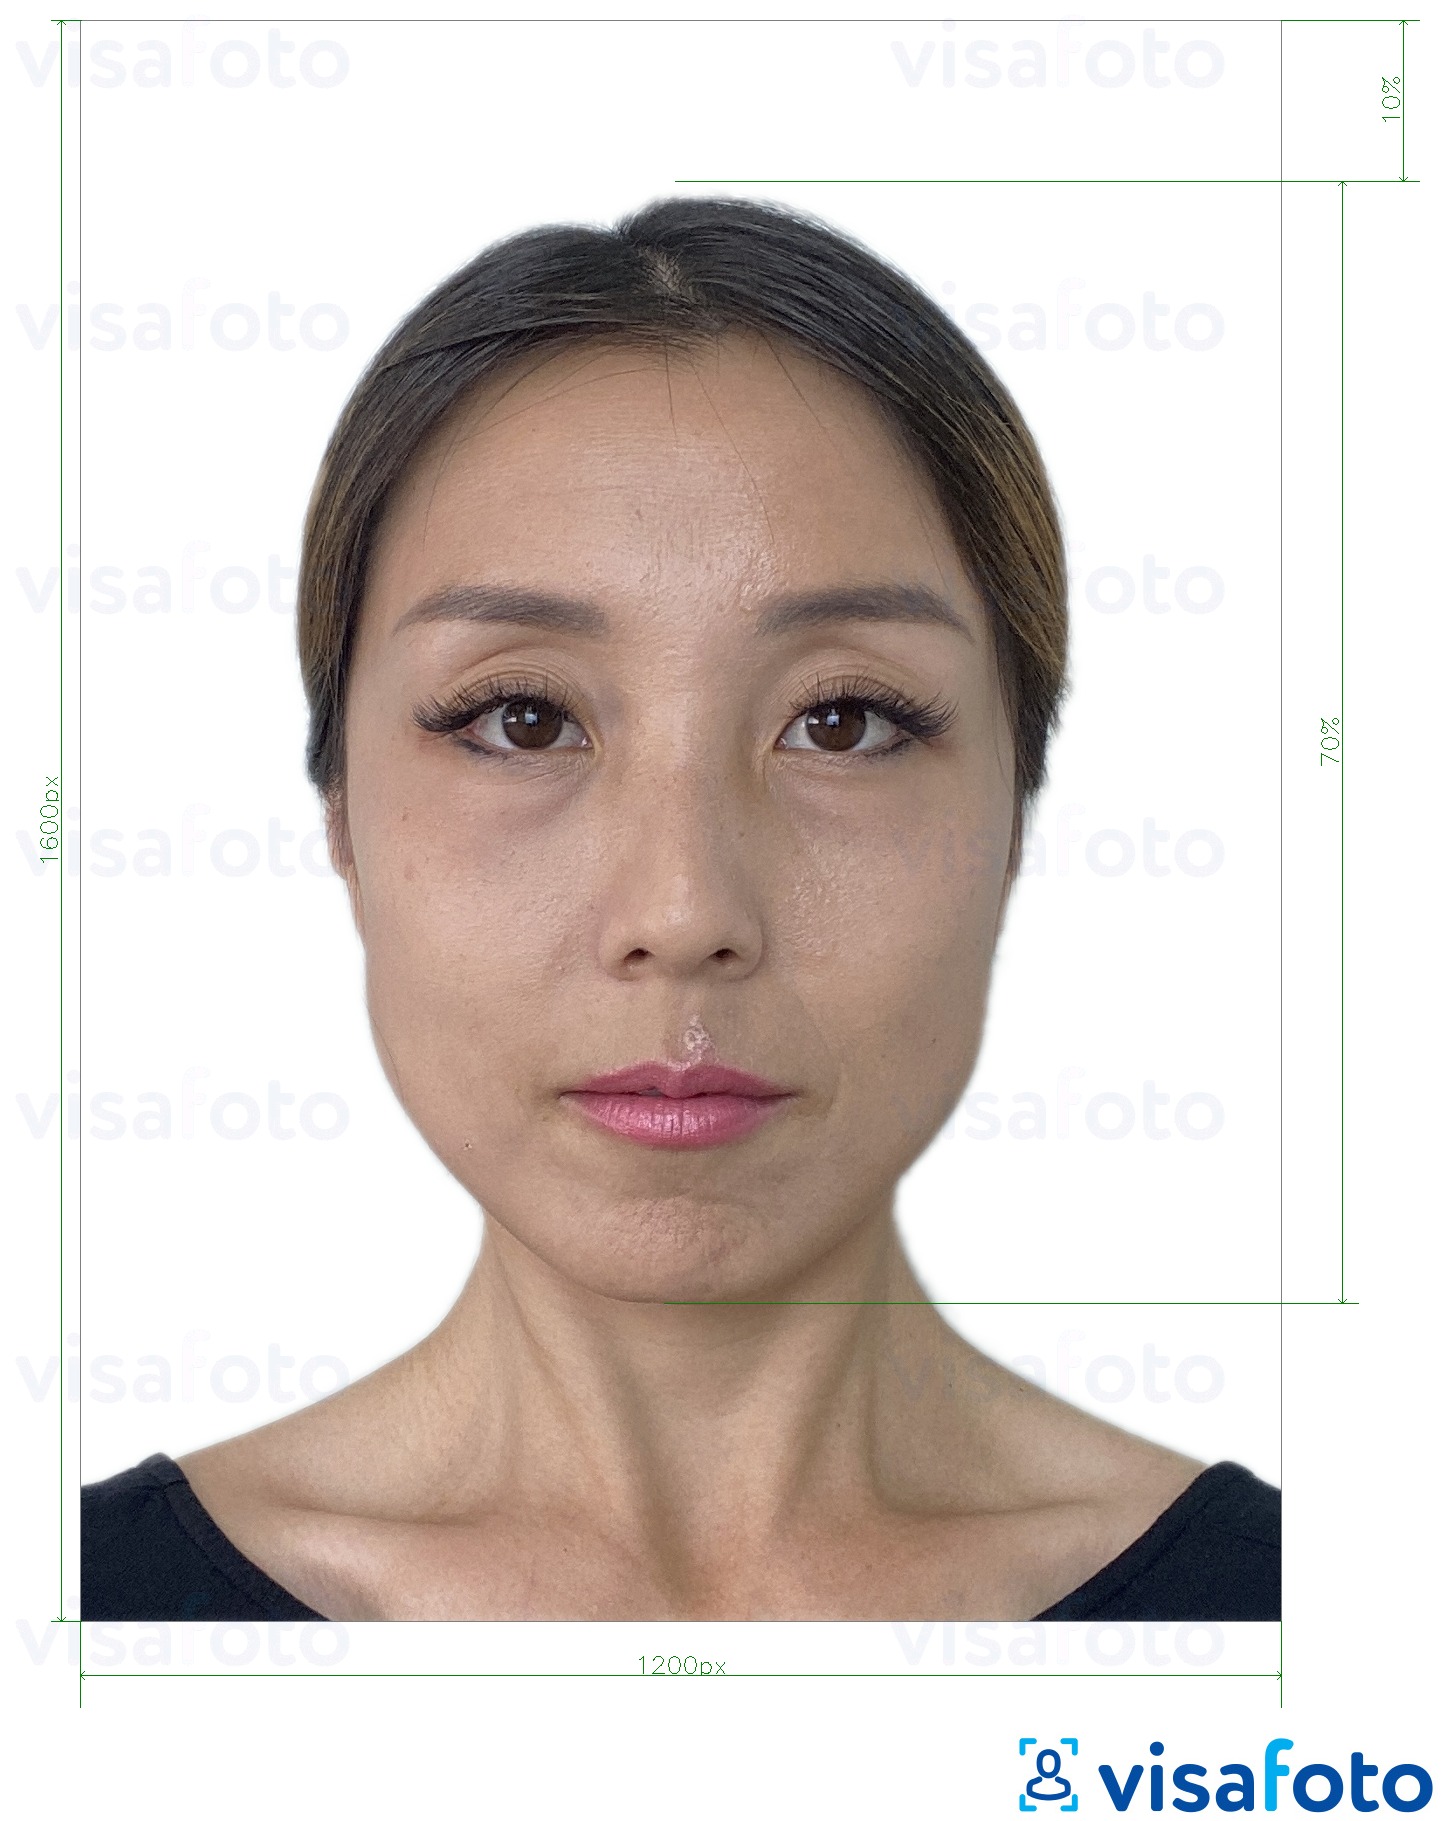 Приклад фотографії для Гонконгський електронний паспорт 1200x1600 пікселів з точними специфікаціями розміру